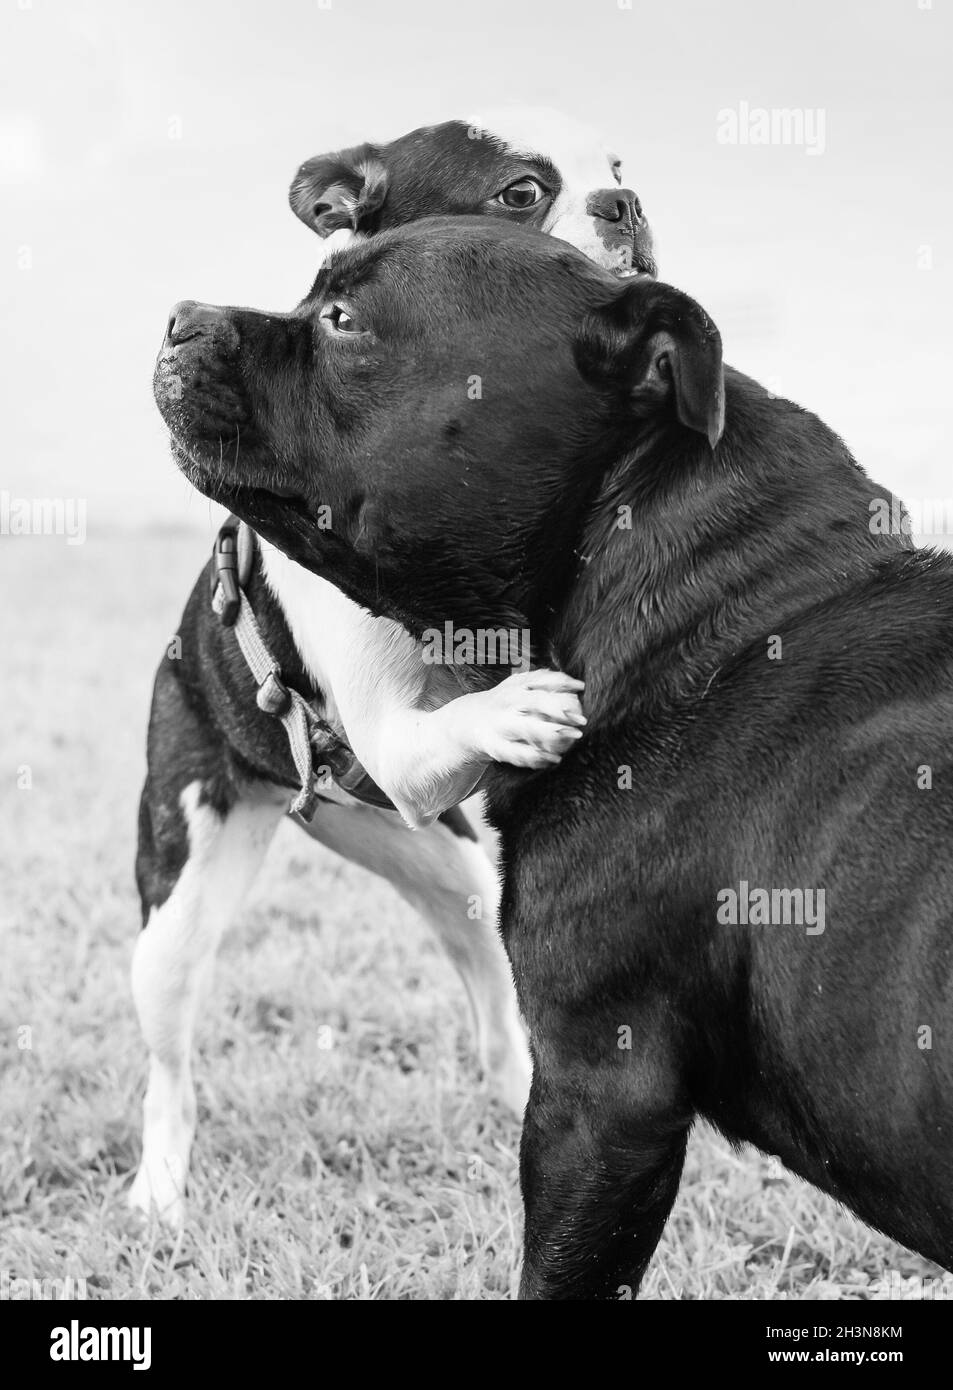 Boston Terrier cucciolo con le zampe intorno al grande collo di un Toro di Staffordshire Terrier. Sono hugging o wrestling. L'immagine è in bianco e nero Foto Stock